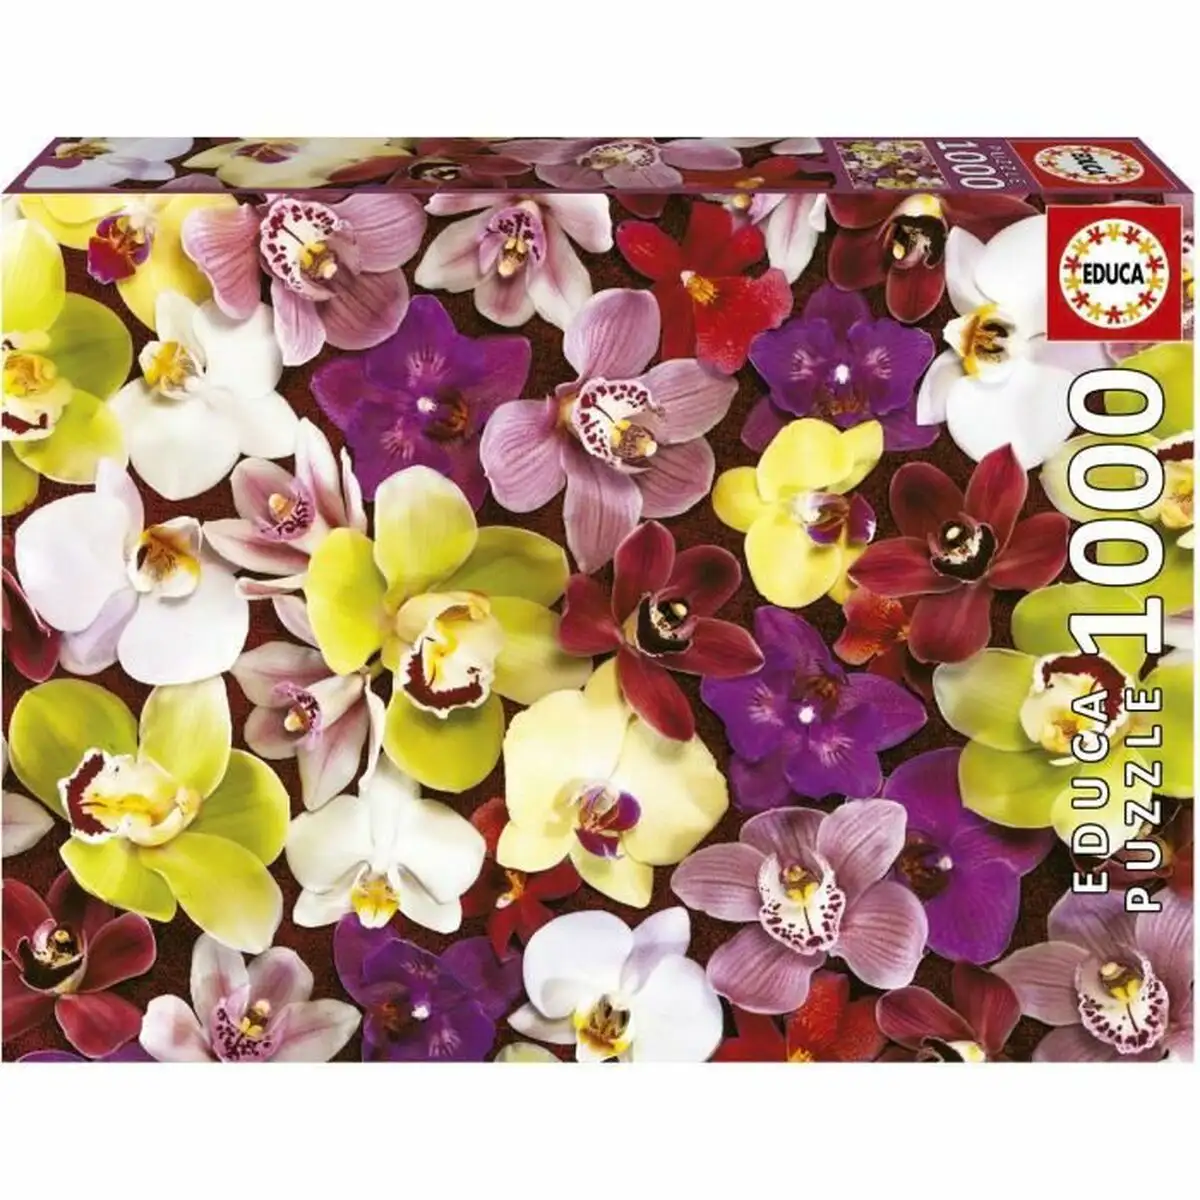 Puzzle educa orchidee 1000 pieces_7285. DIAYTAR SENEGAL - Là où Choisir est un Acte d'Amour pour le Sénégal. Explorez notre gamme et choisissez des produits qui célèbrent la culture et l'artisanat du pays.